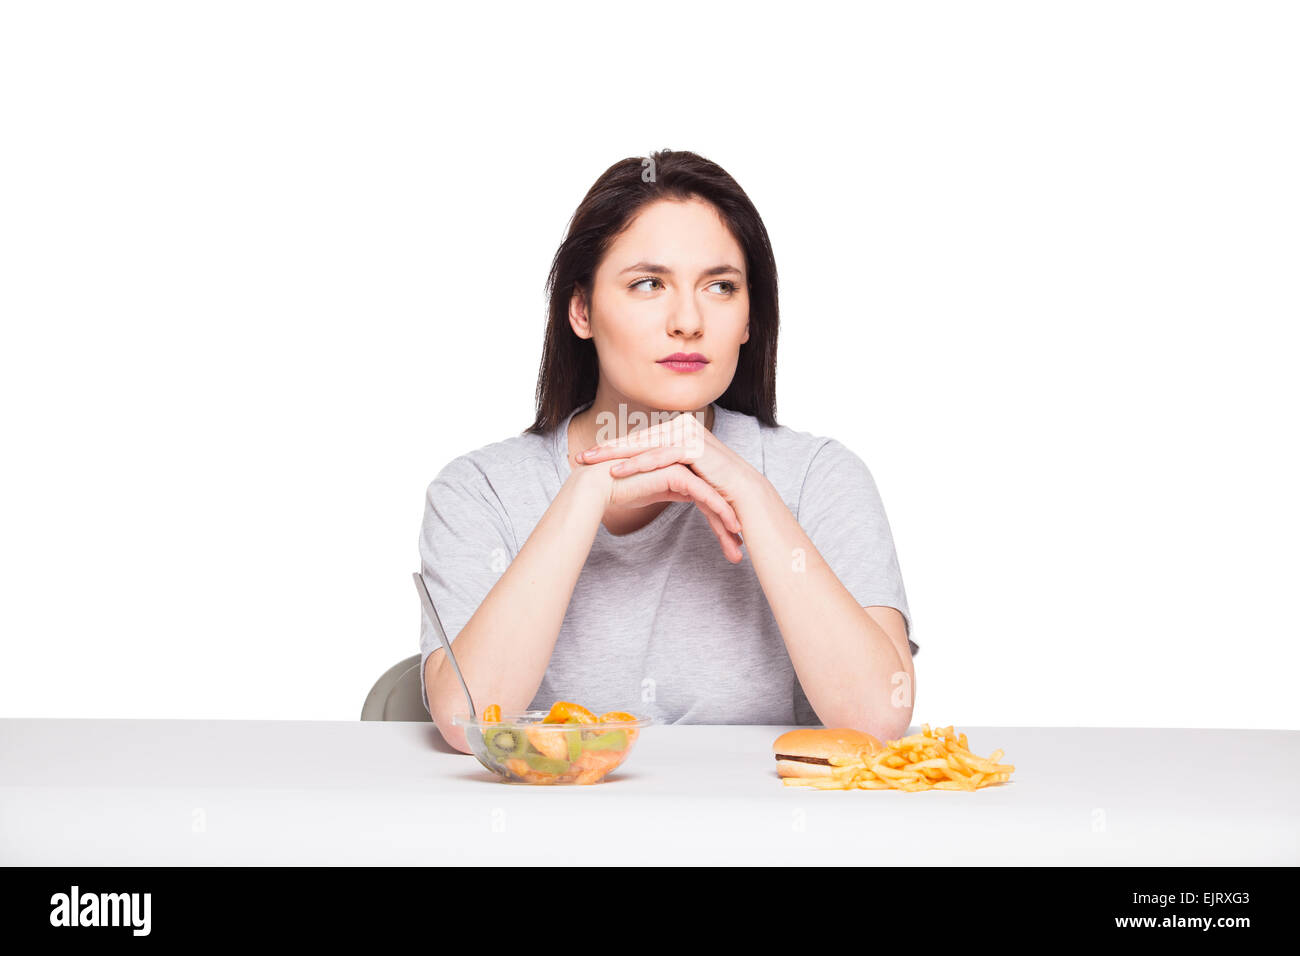 Immagine di donna con frutta e hamburger nella parte anteriore su sfondo bianco, sano versus junk food concept Foto Stock